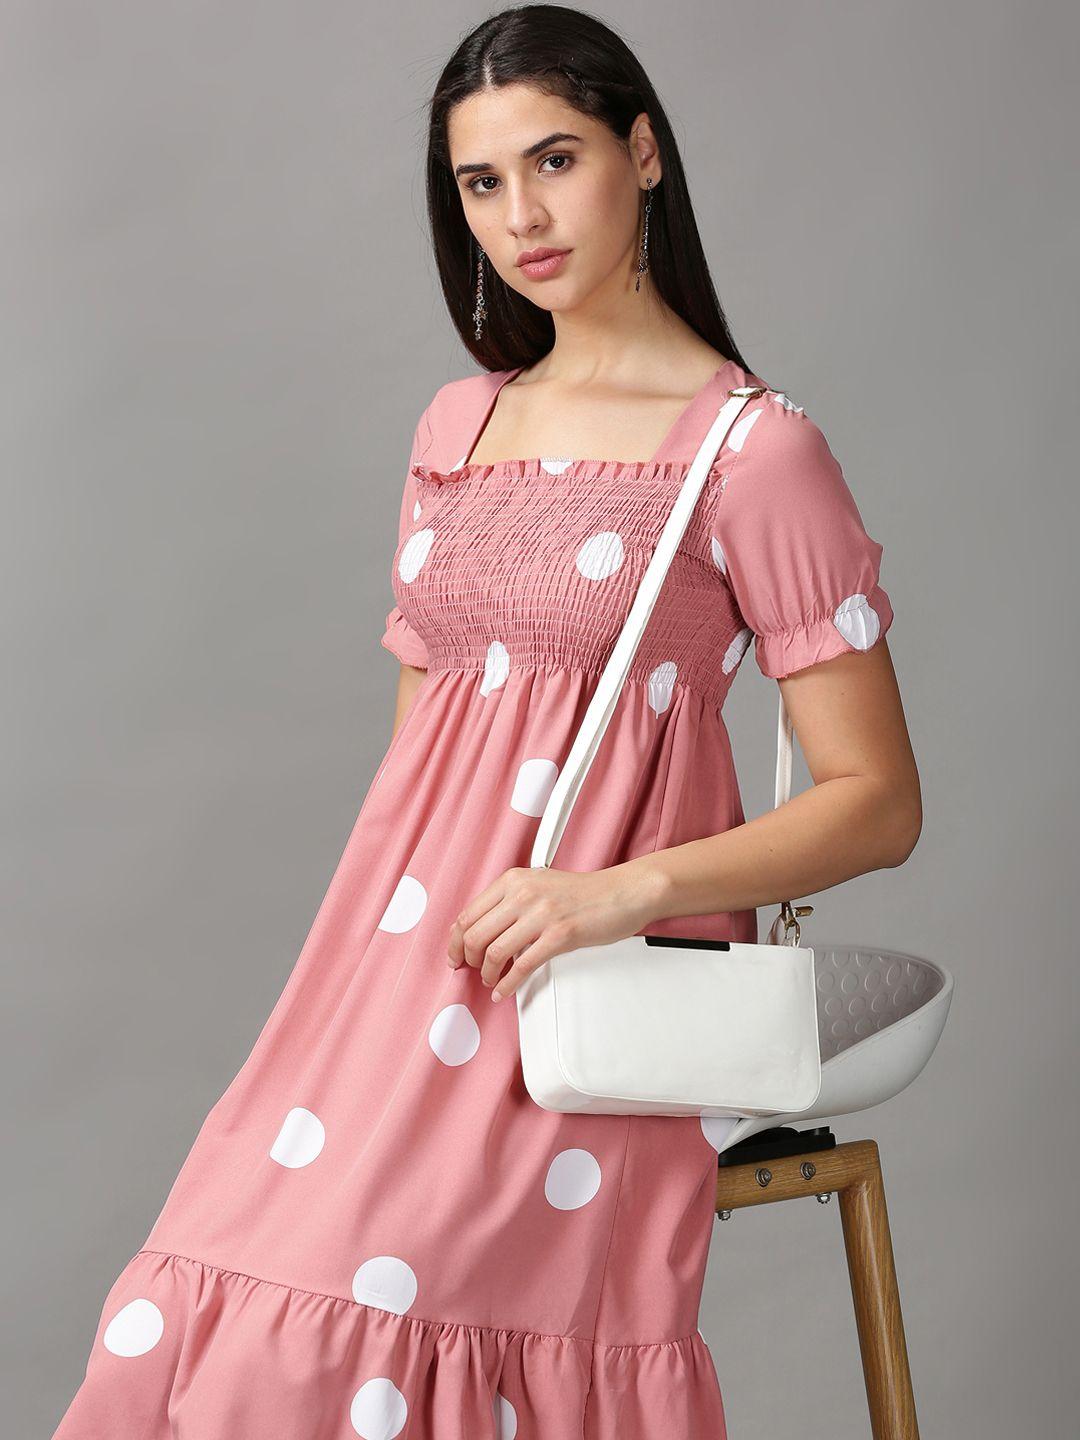 showoff mauve & white polka dot printed empire dress